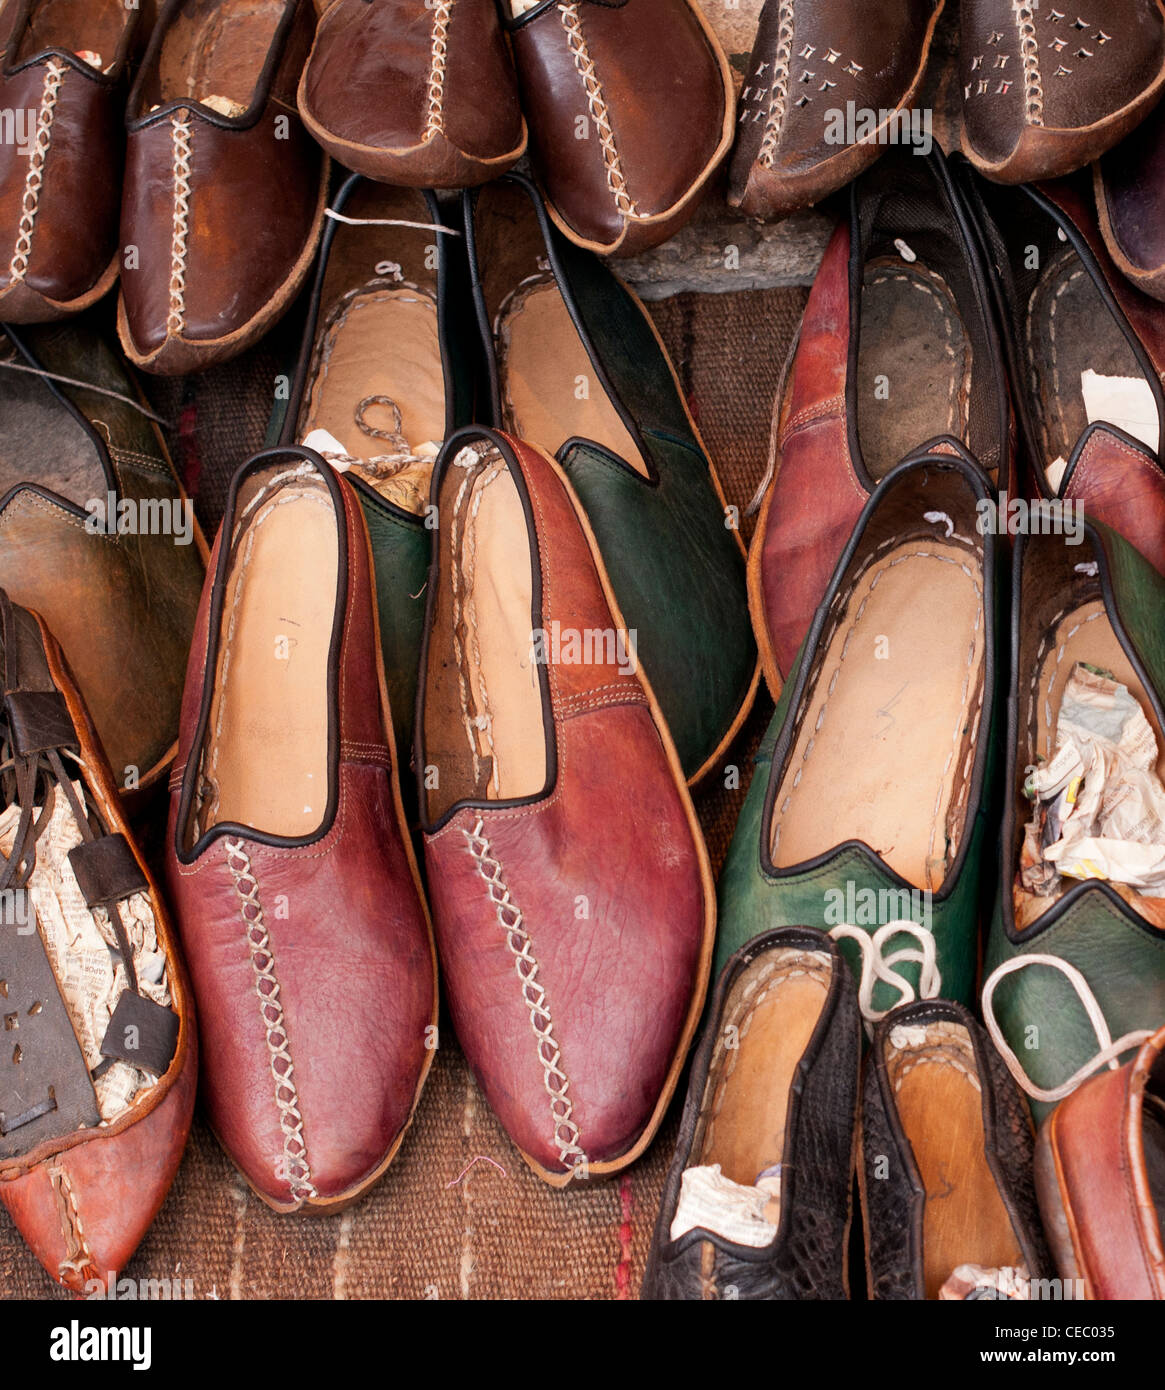 Pantofole turche immagini e fotografie stock ad alta risoluzione - Alamy